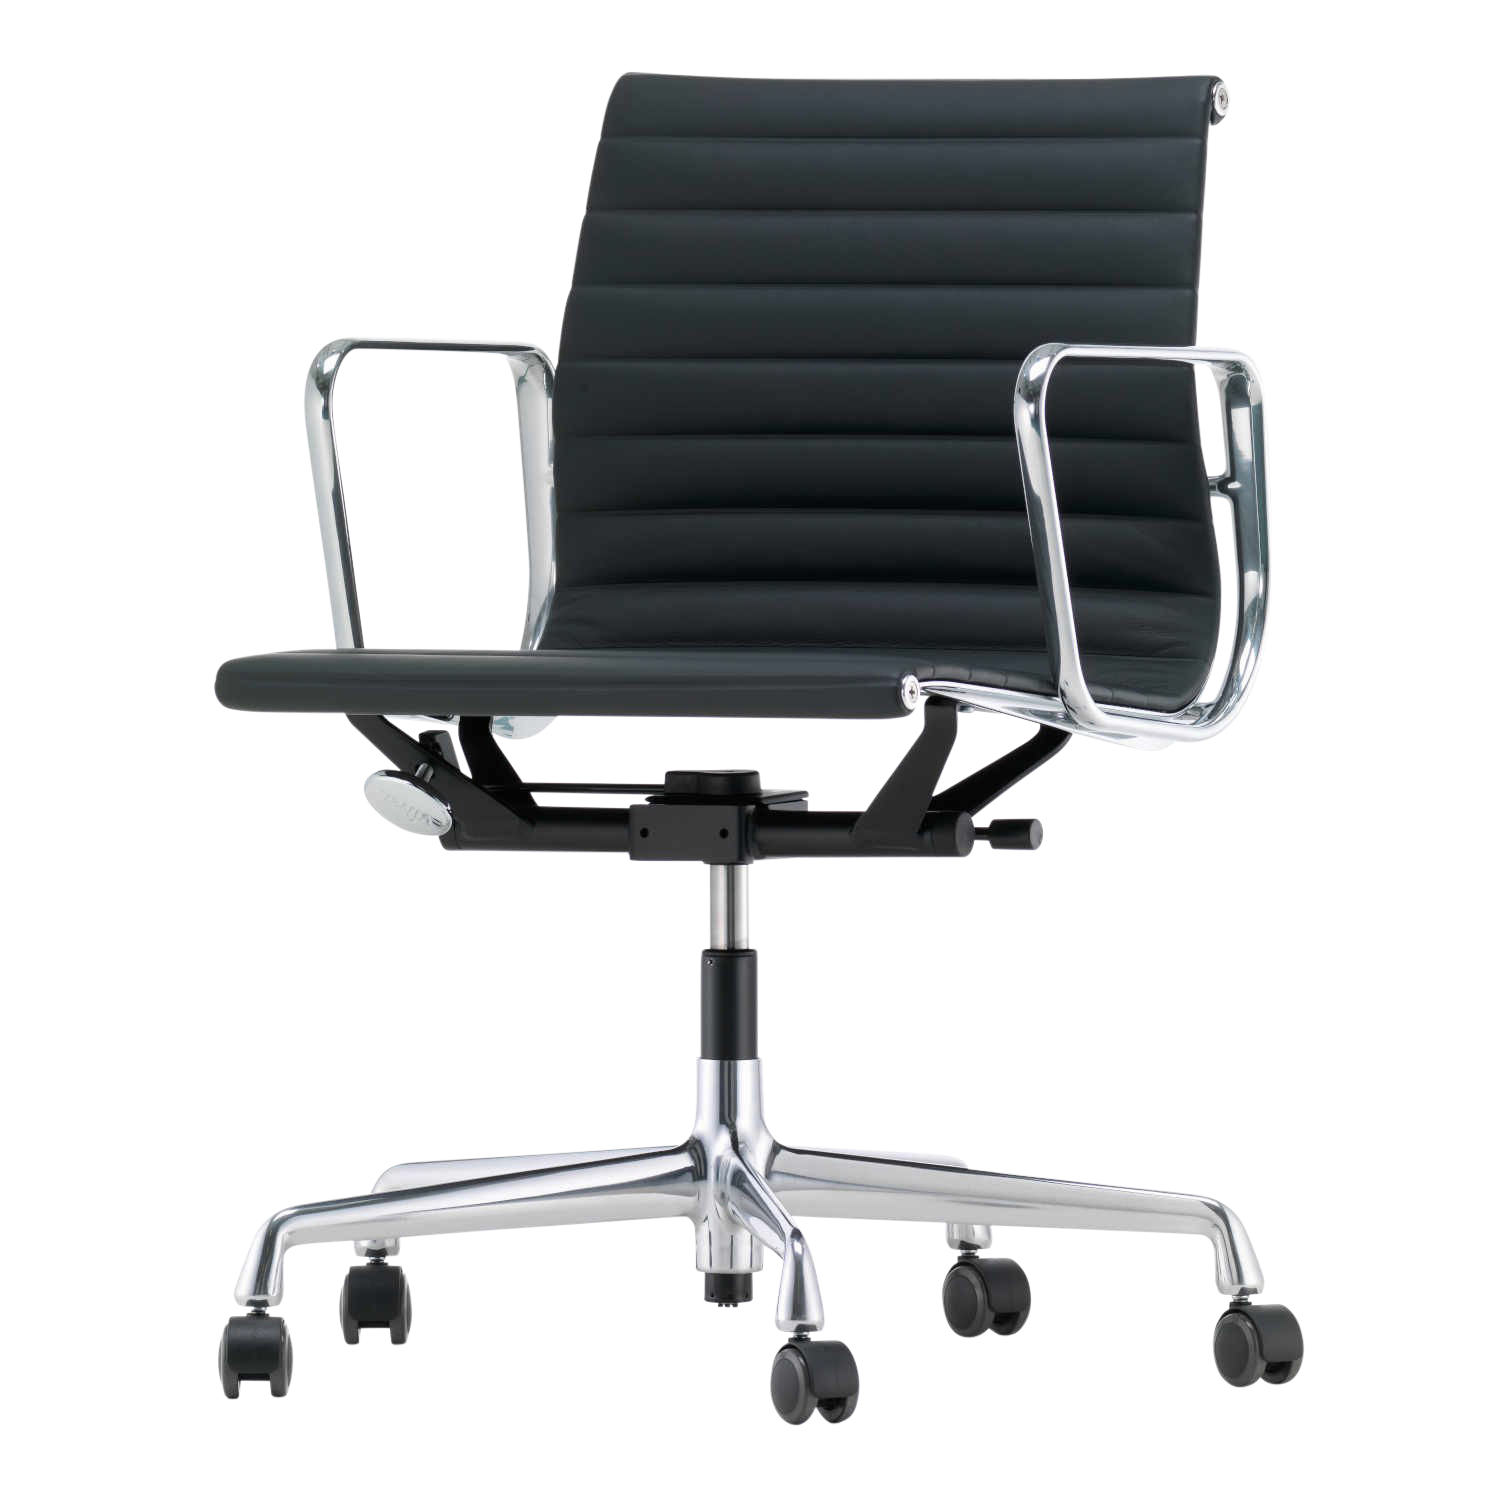 EA117 Aluminium Chair Leder-Bürodrehstuhl, Leder/Rückseite Plano 21/19 dimgrey / sierragrau, Untergestell aluminium poliert, Rollen rolle weich geb... von Vitra